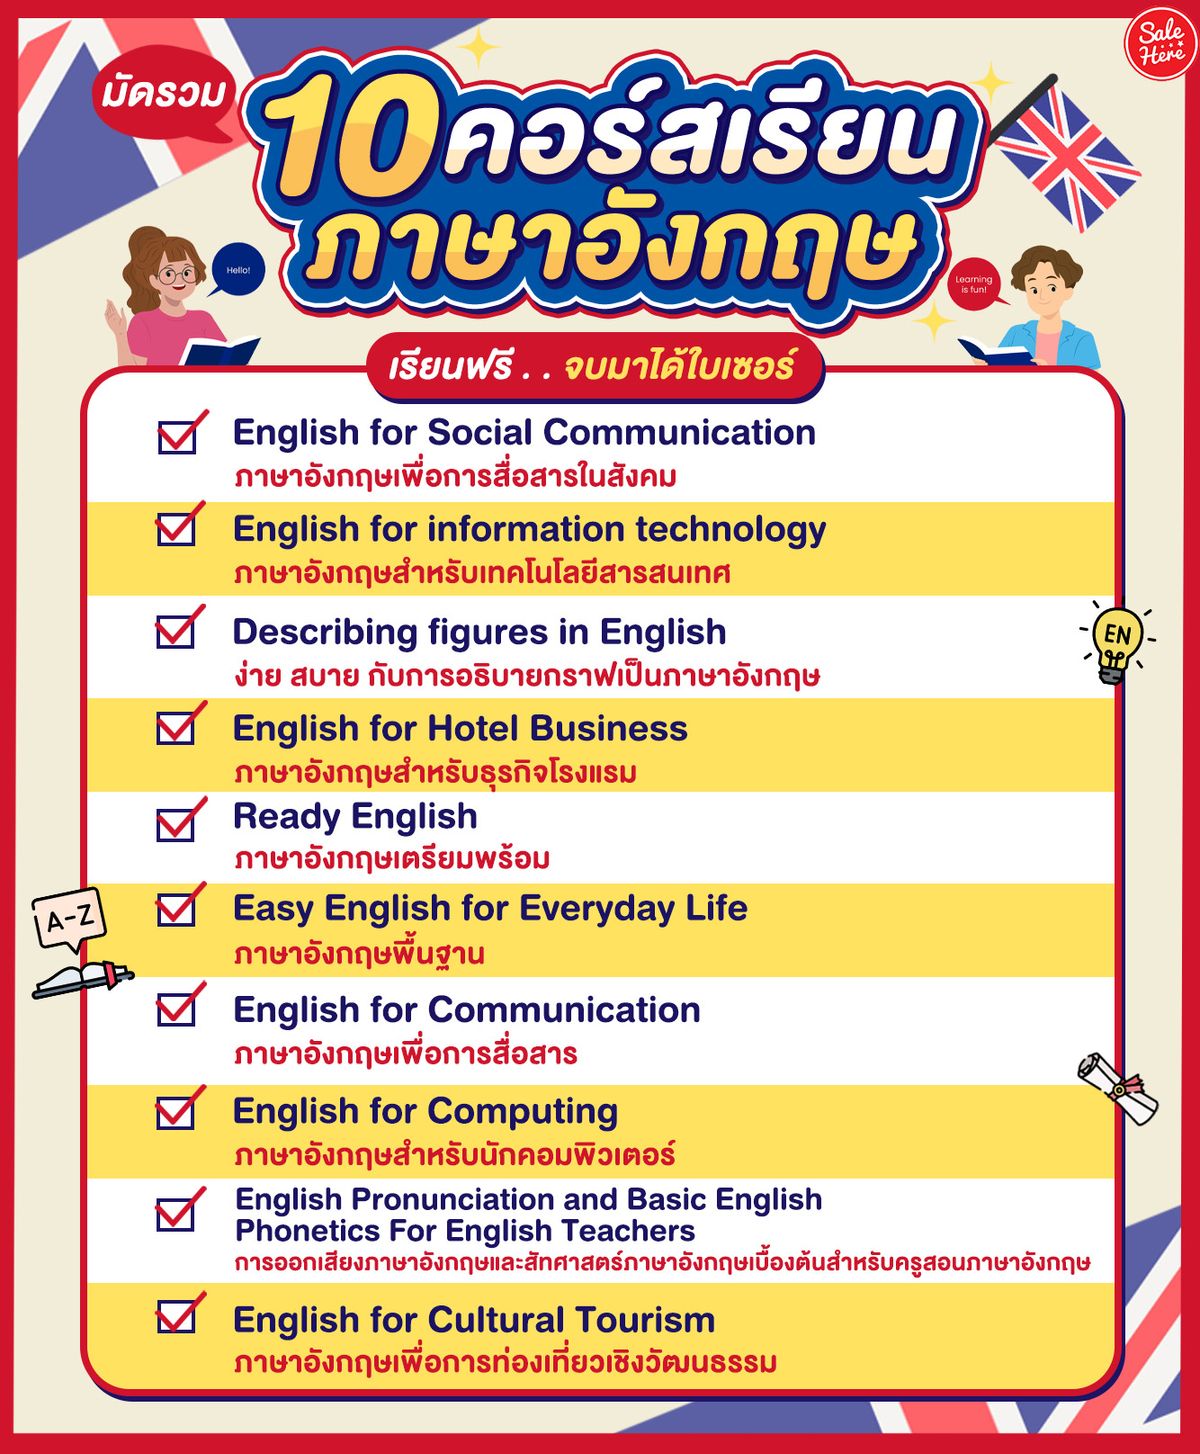 รวม 10 คอร์สเรียนภาษาอังกฤษ เรียนฟรี จบมาได้ใบเซอร์ กรกฎาคม 2023 - Sale Here